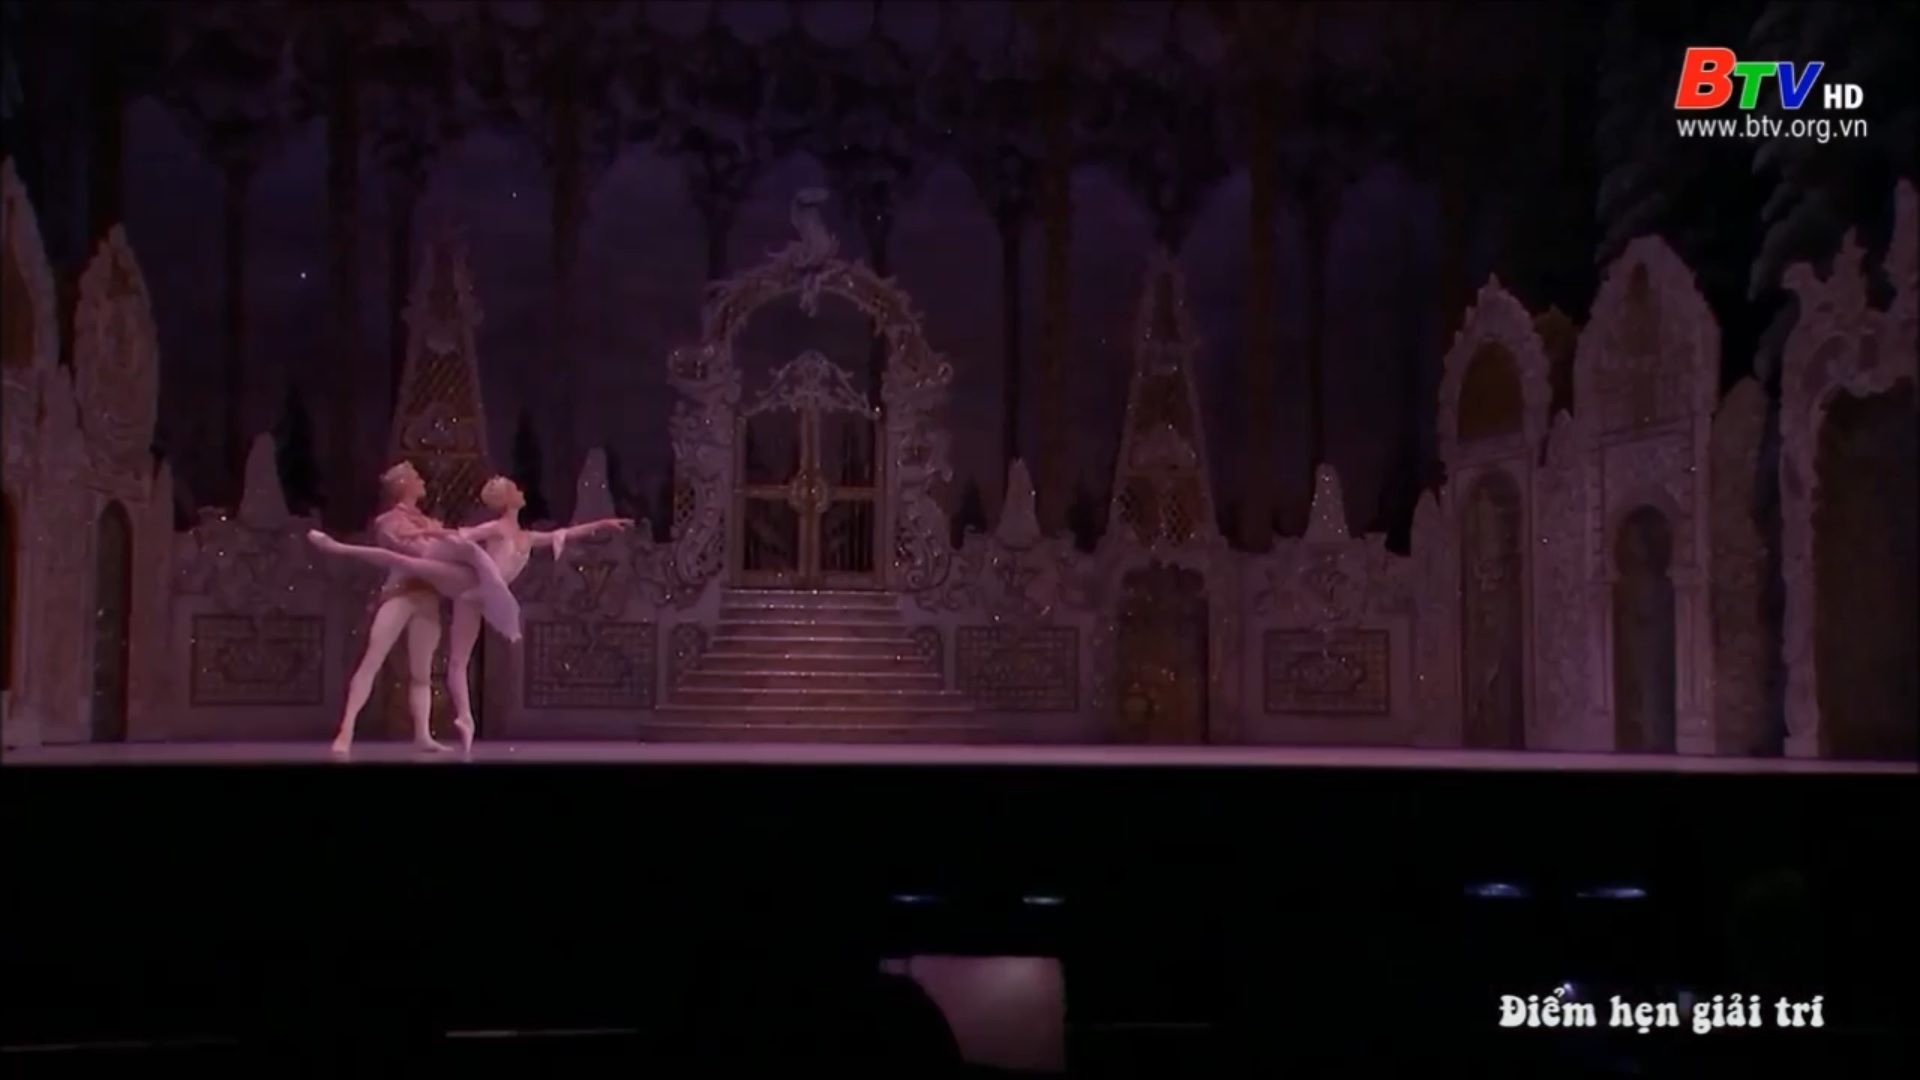 Vở Ballet “Chiếc kẹp hạt dẻ” trở lại dịp giáng sinh